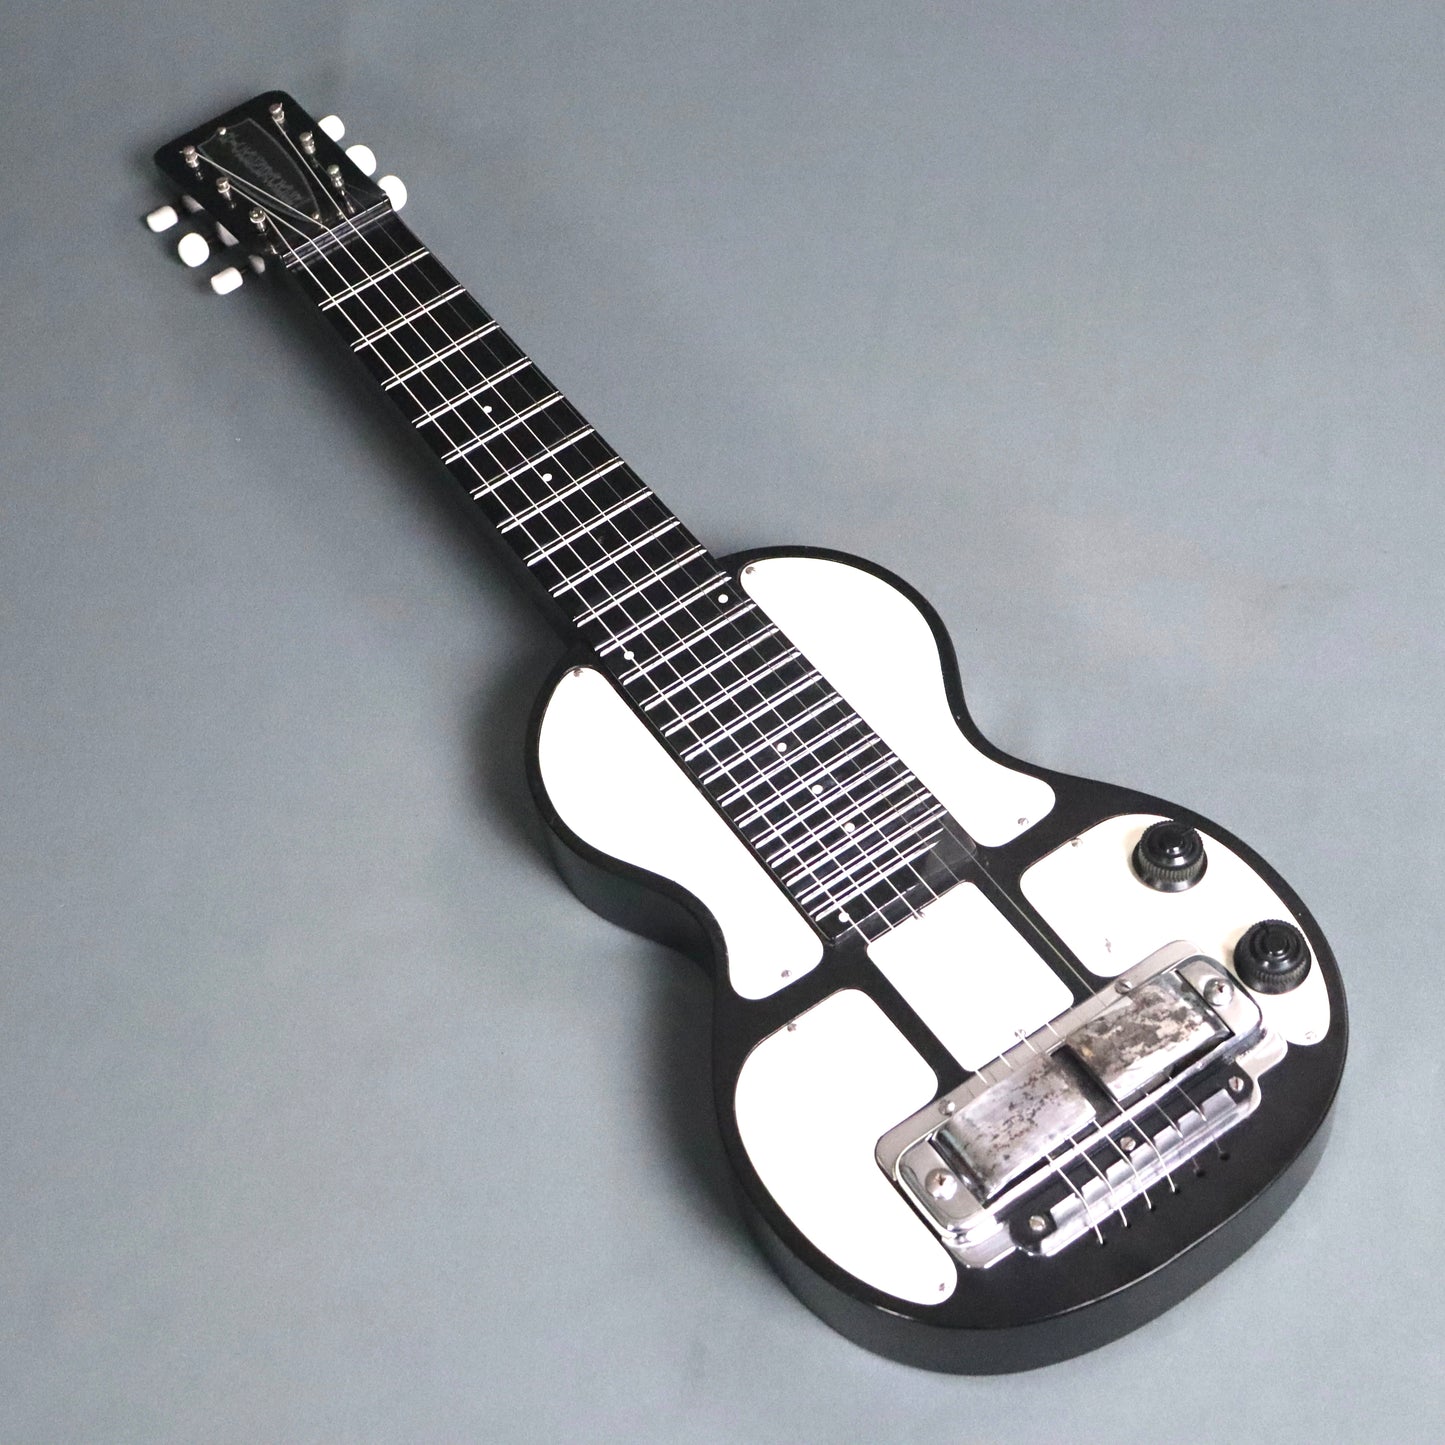 1950s Rickenbacker B-6 Hawaiian Lap Steel Guitar "Panda" Lapsteel